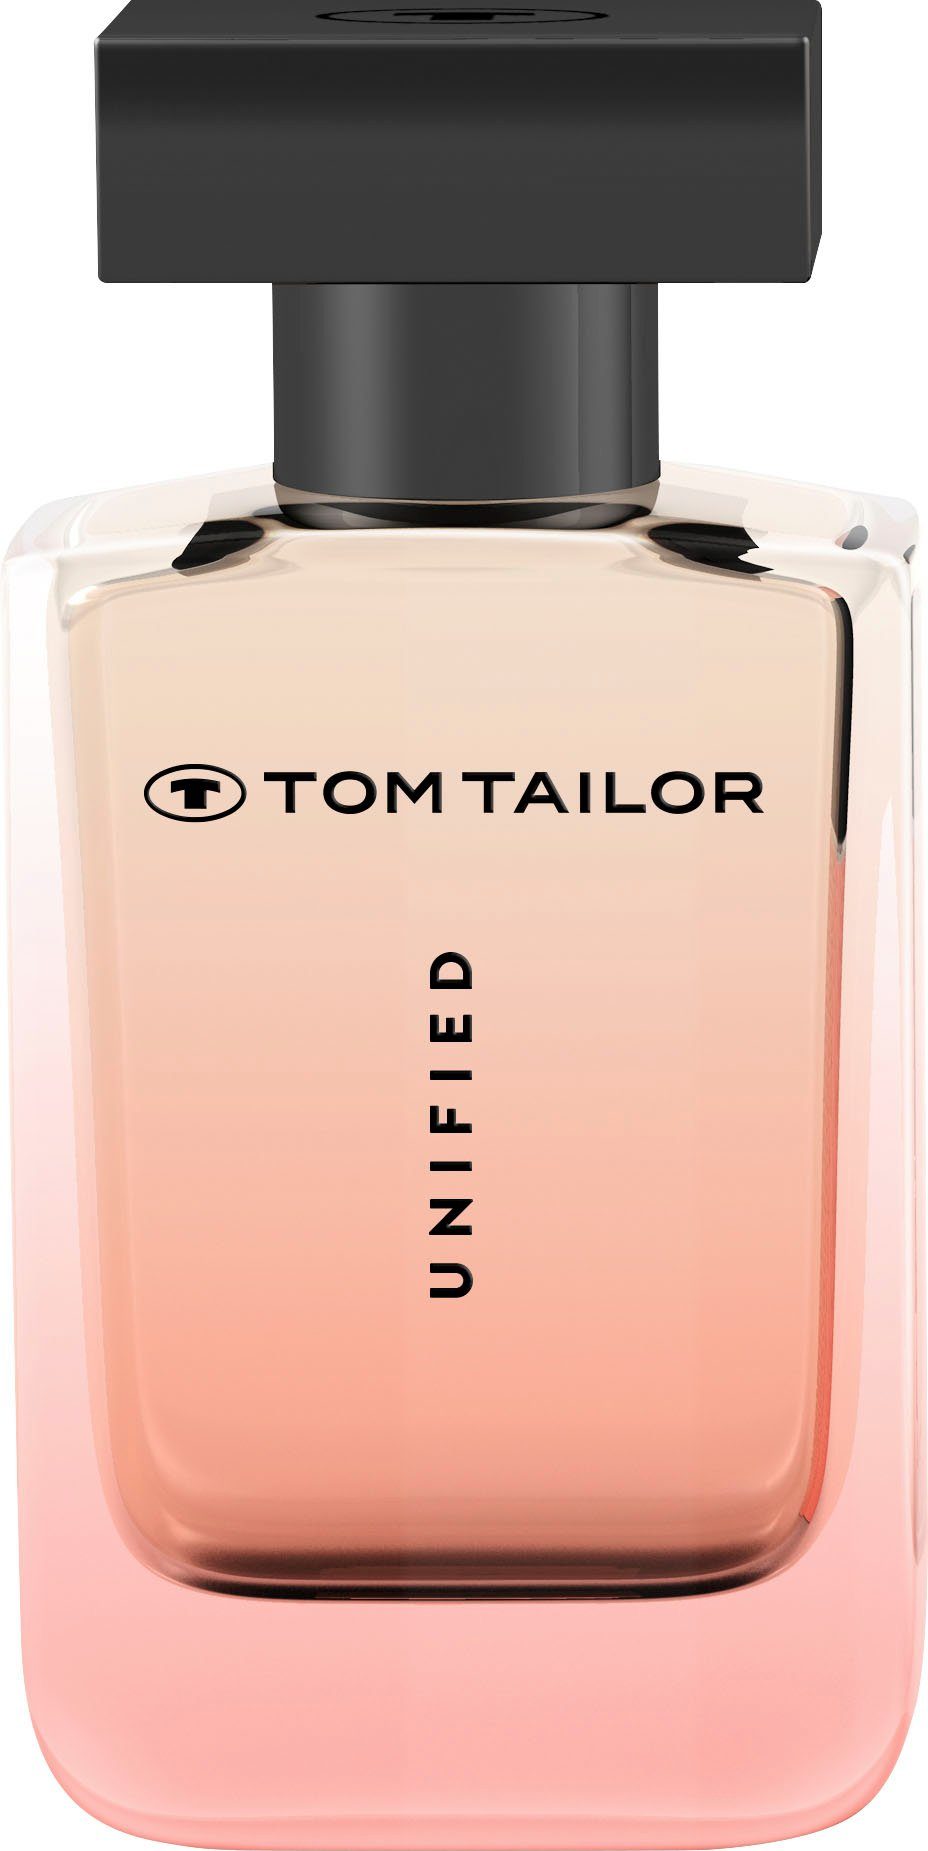 TOM TAILOR Eau Parfum Woman UNIFIED de